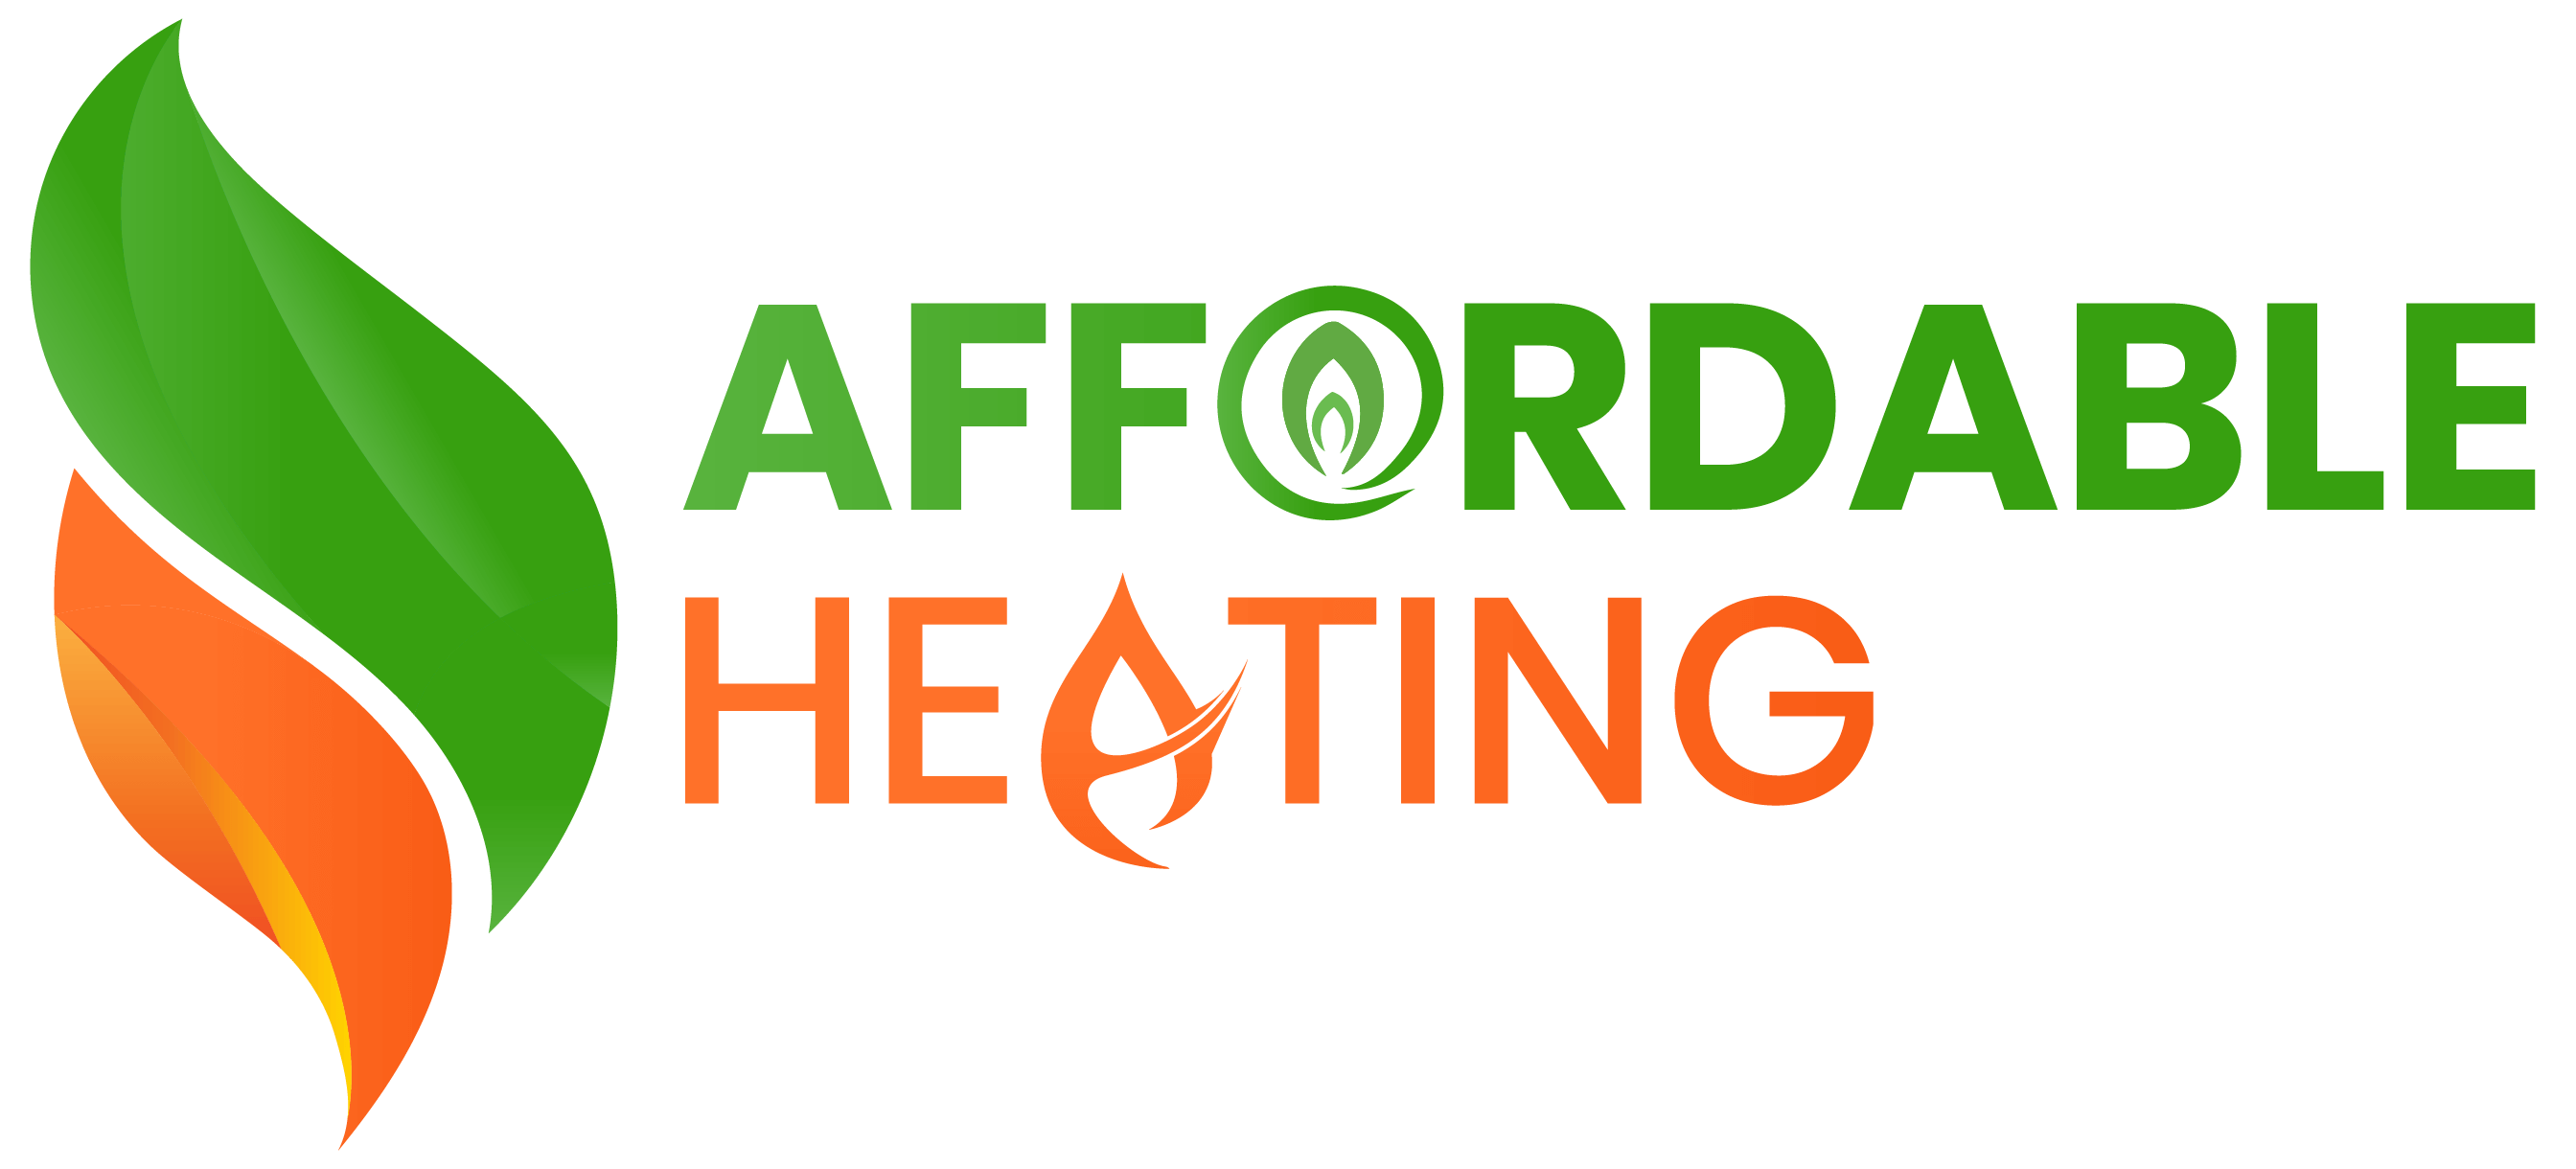 Oil Heating Rebate Ns